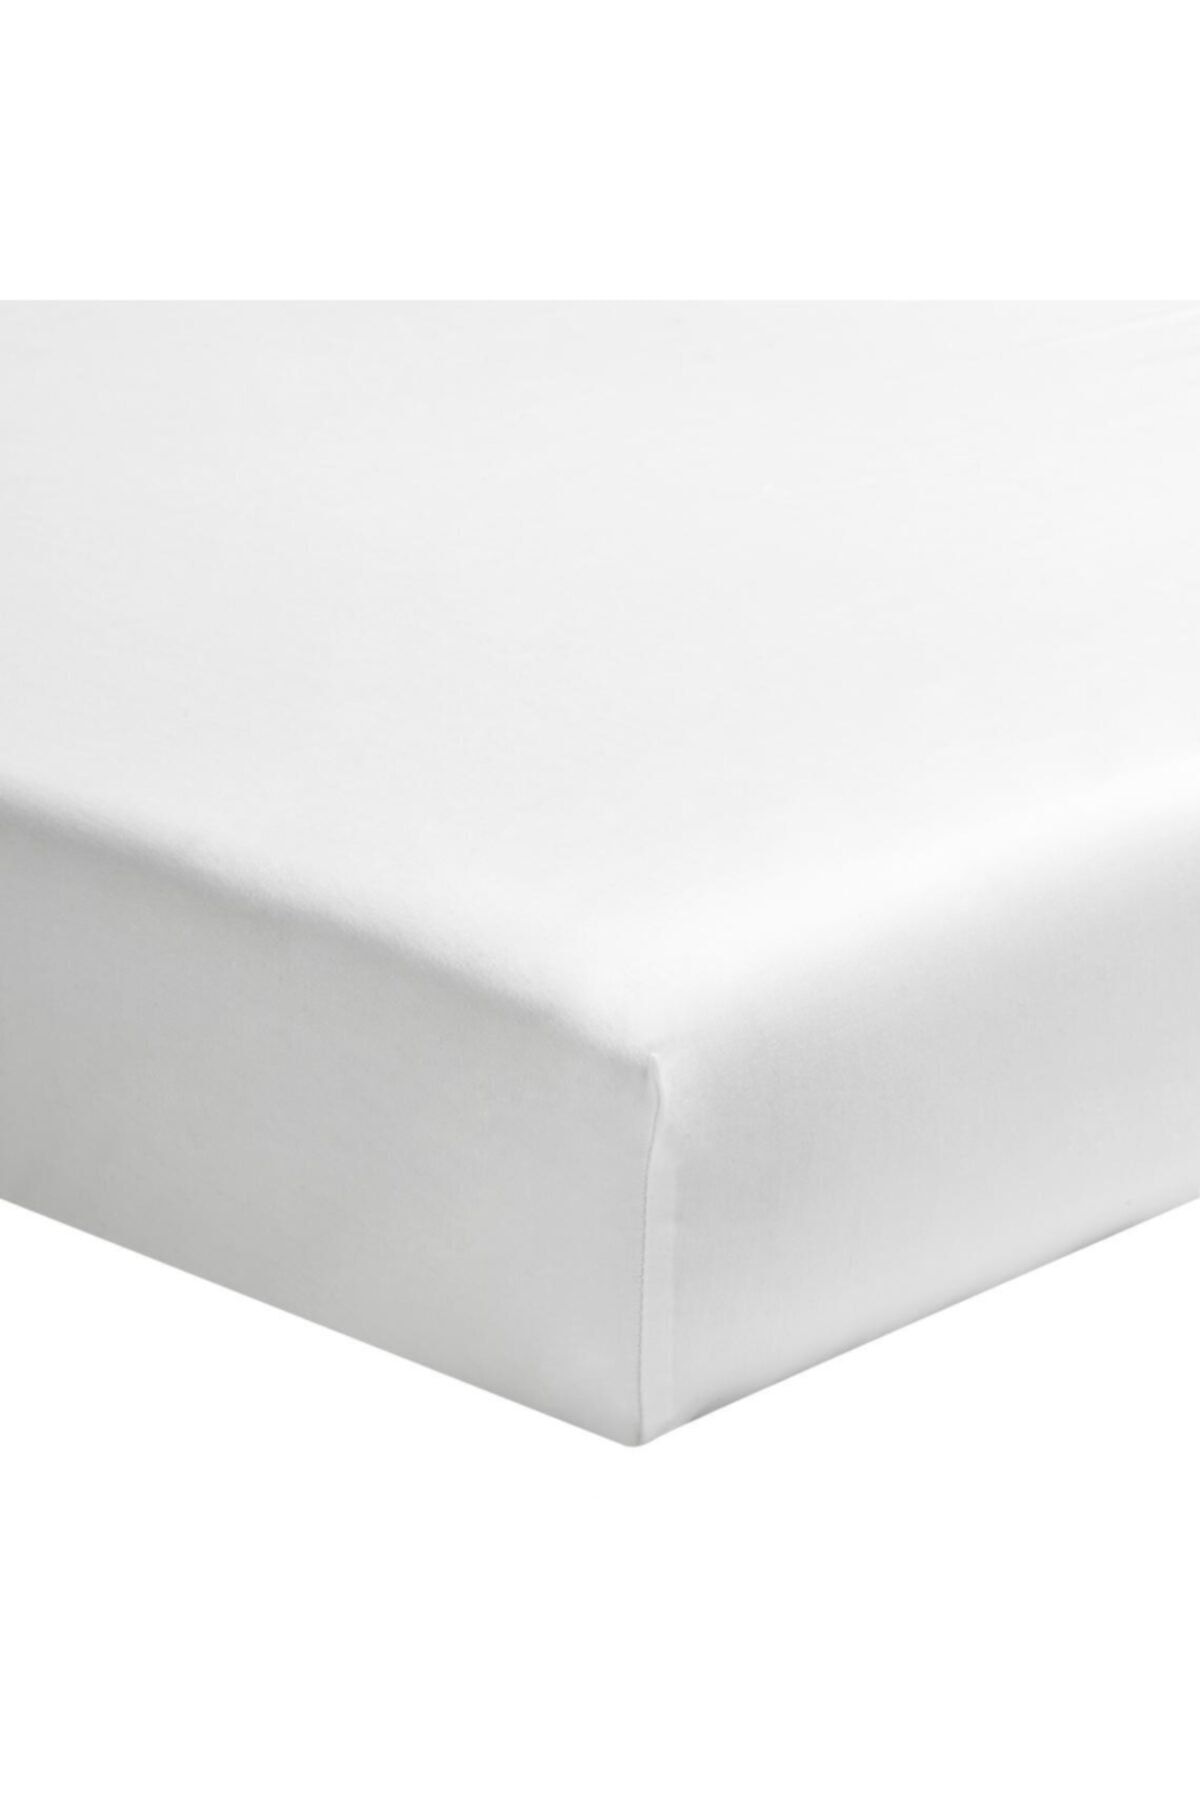 Maki %100 Pamuklu Ranforce Lastikli Çarşaf 160x200 (32 Cm Derin Flaplı) , Beyaz